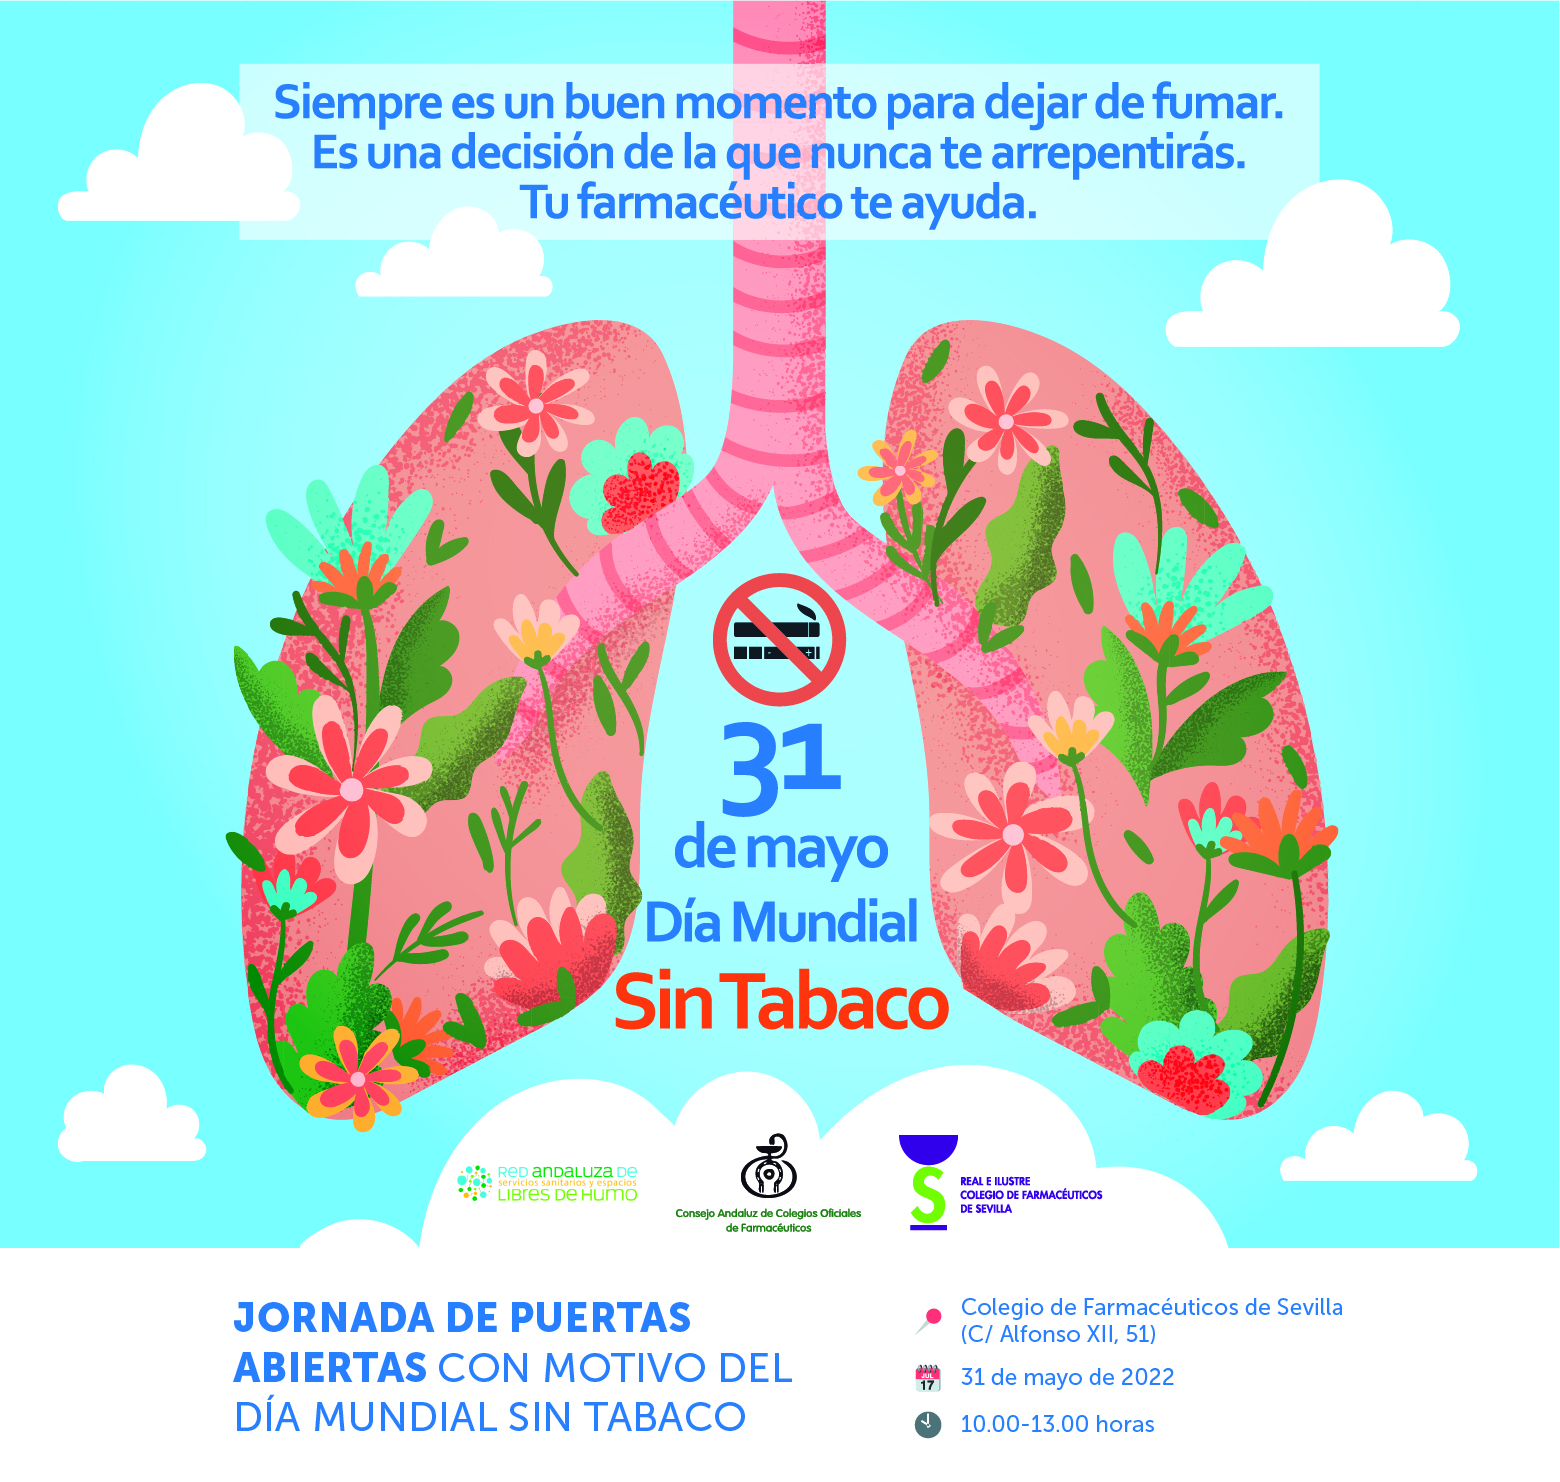 El Colegio de Farmacéuticos de Sevilla celebrará el próximo 31 de mayo una jornada de puertas abiertas dirigida a fomentar el abandono del tabaquismo entre personas fumadoras